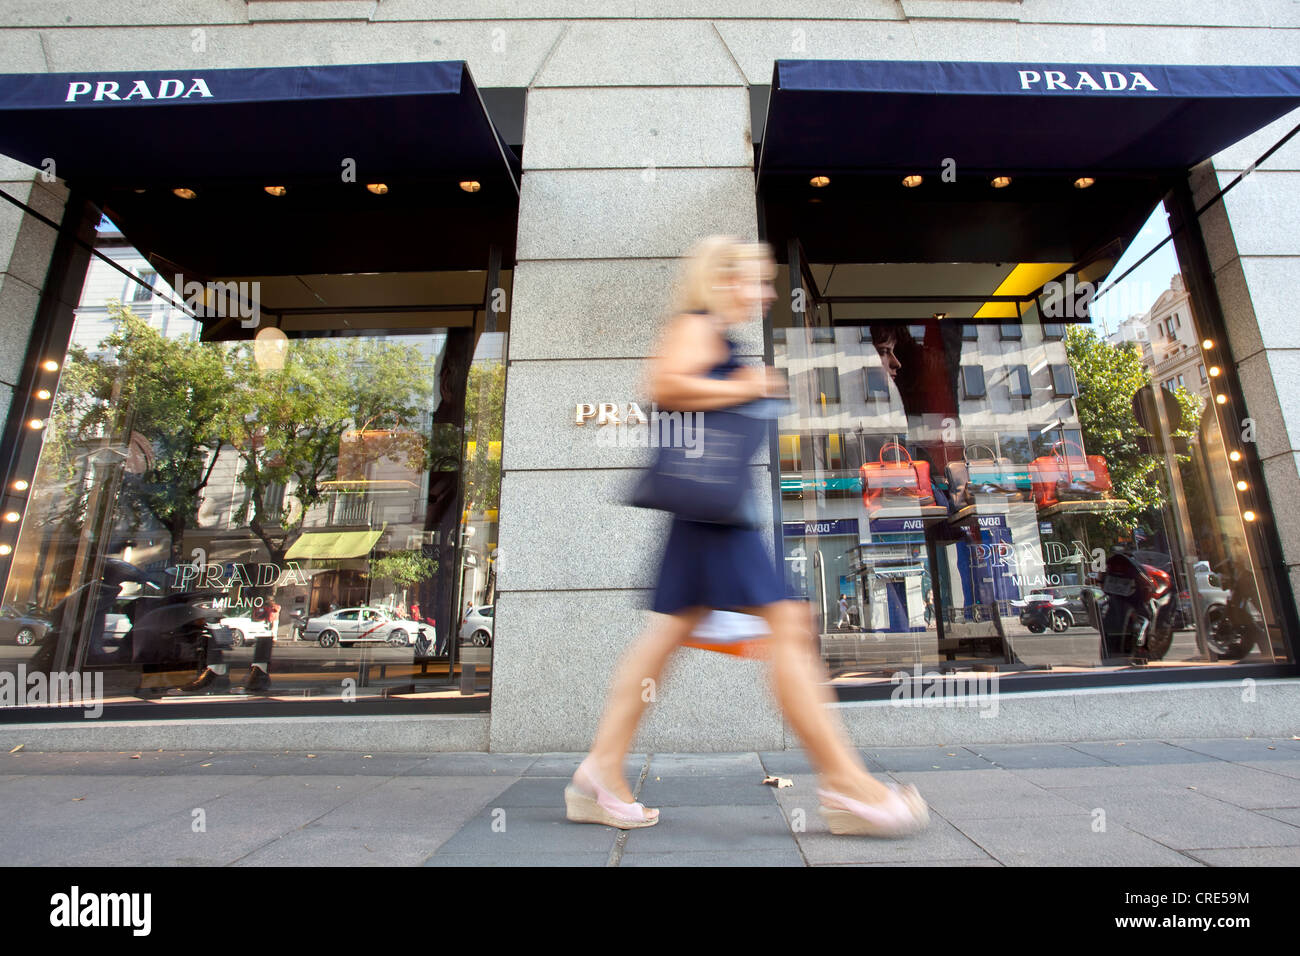 Branche de la maroquinerie de luxe italien et fashion company Prada, dans le prix nobel-rue commerçante Calle de Serrano dans le Banque D'Images